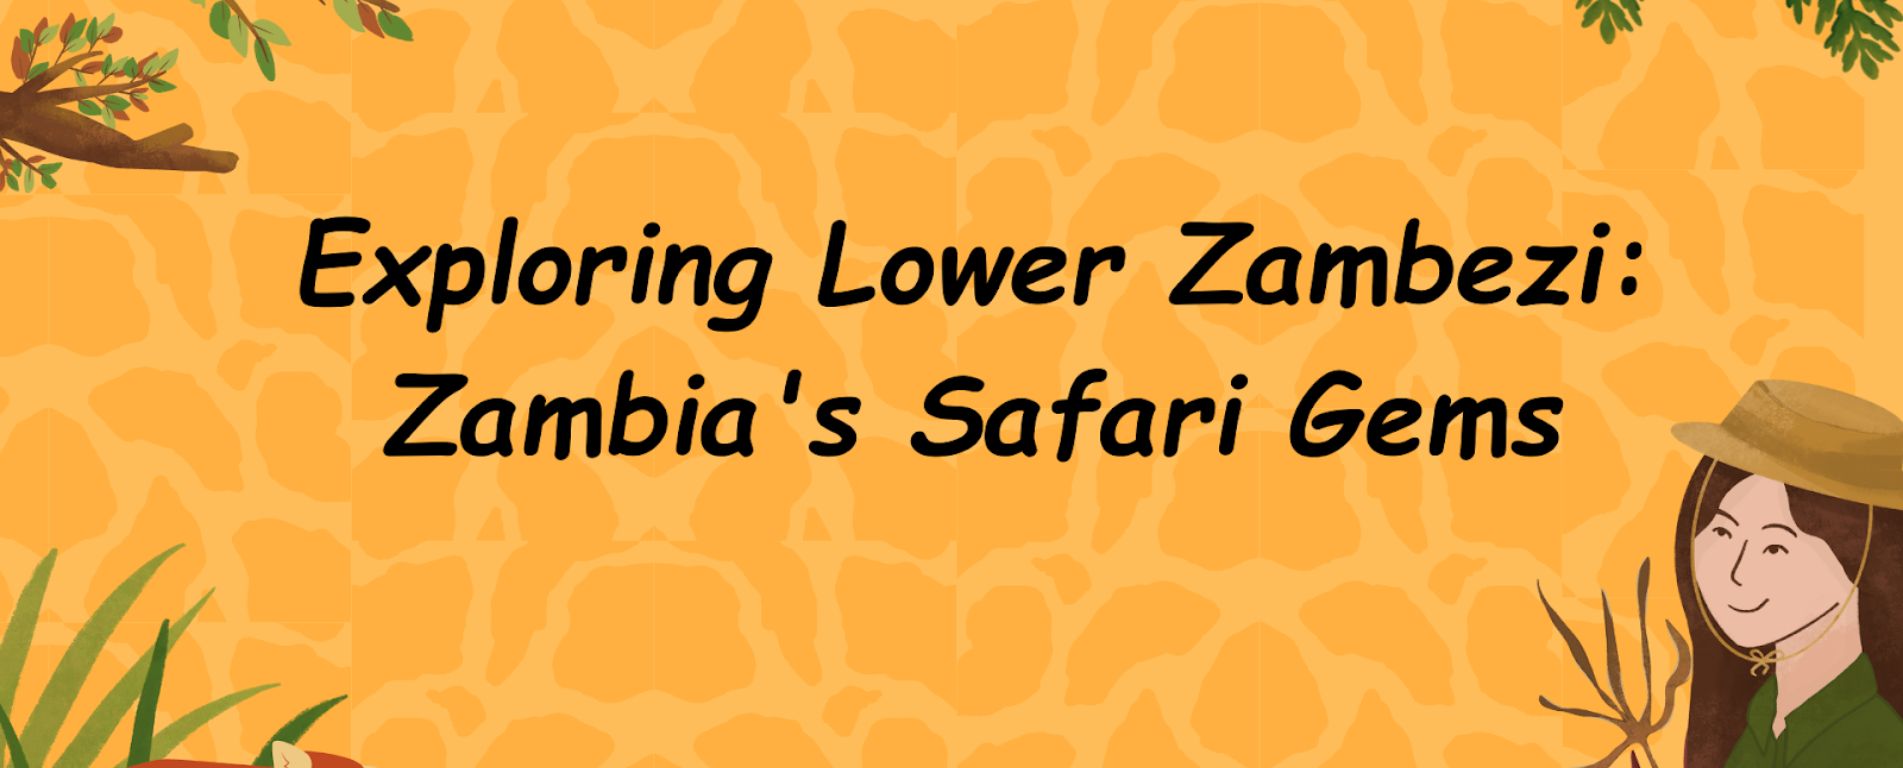 Exploring Lower Zambezi